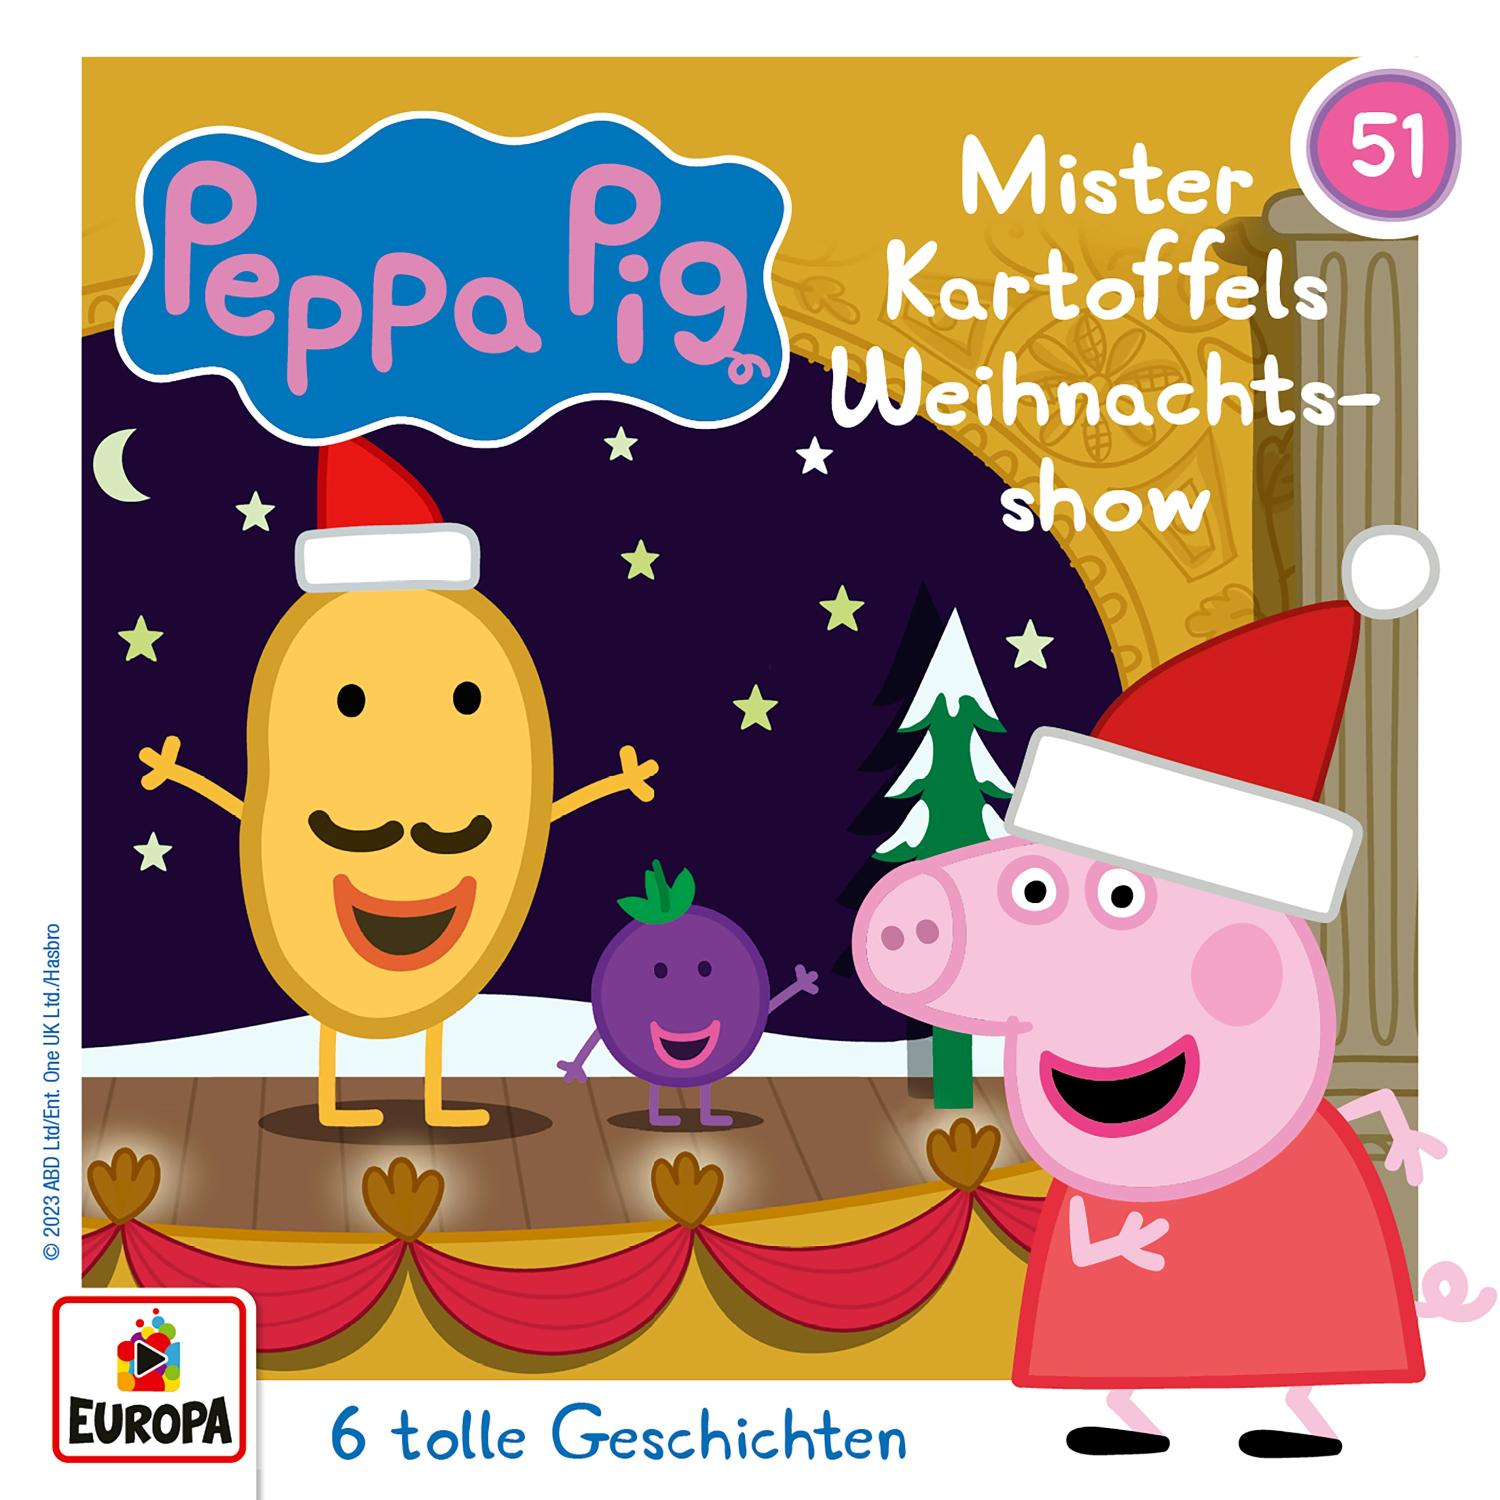 Peppa Pig Hörspiele: Mister Kartoffels Weihnachtsshow